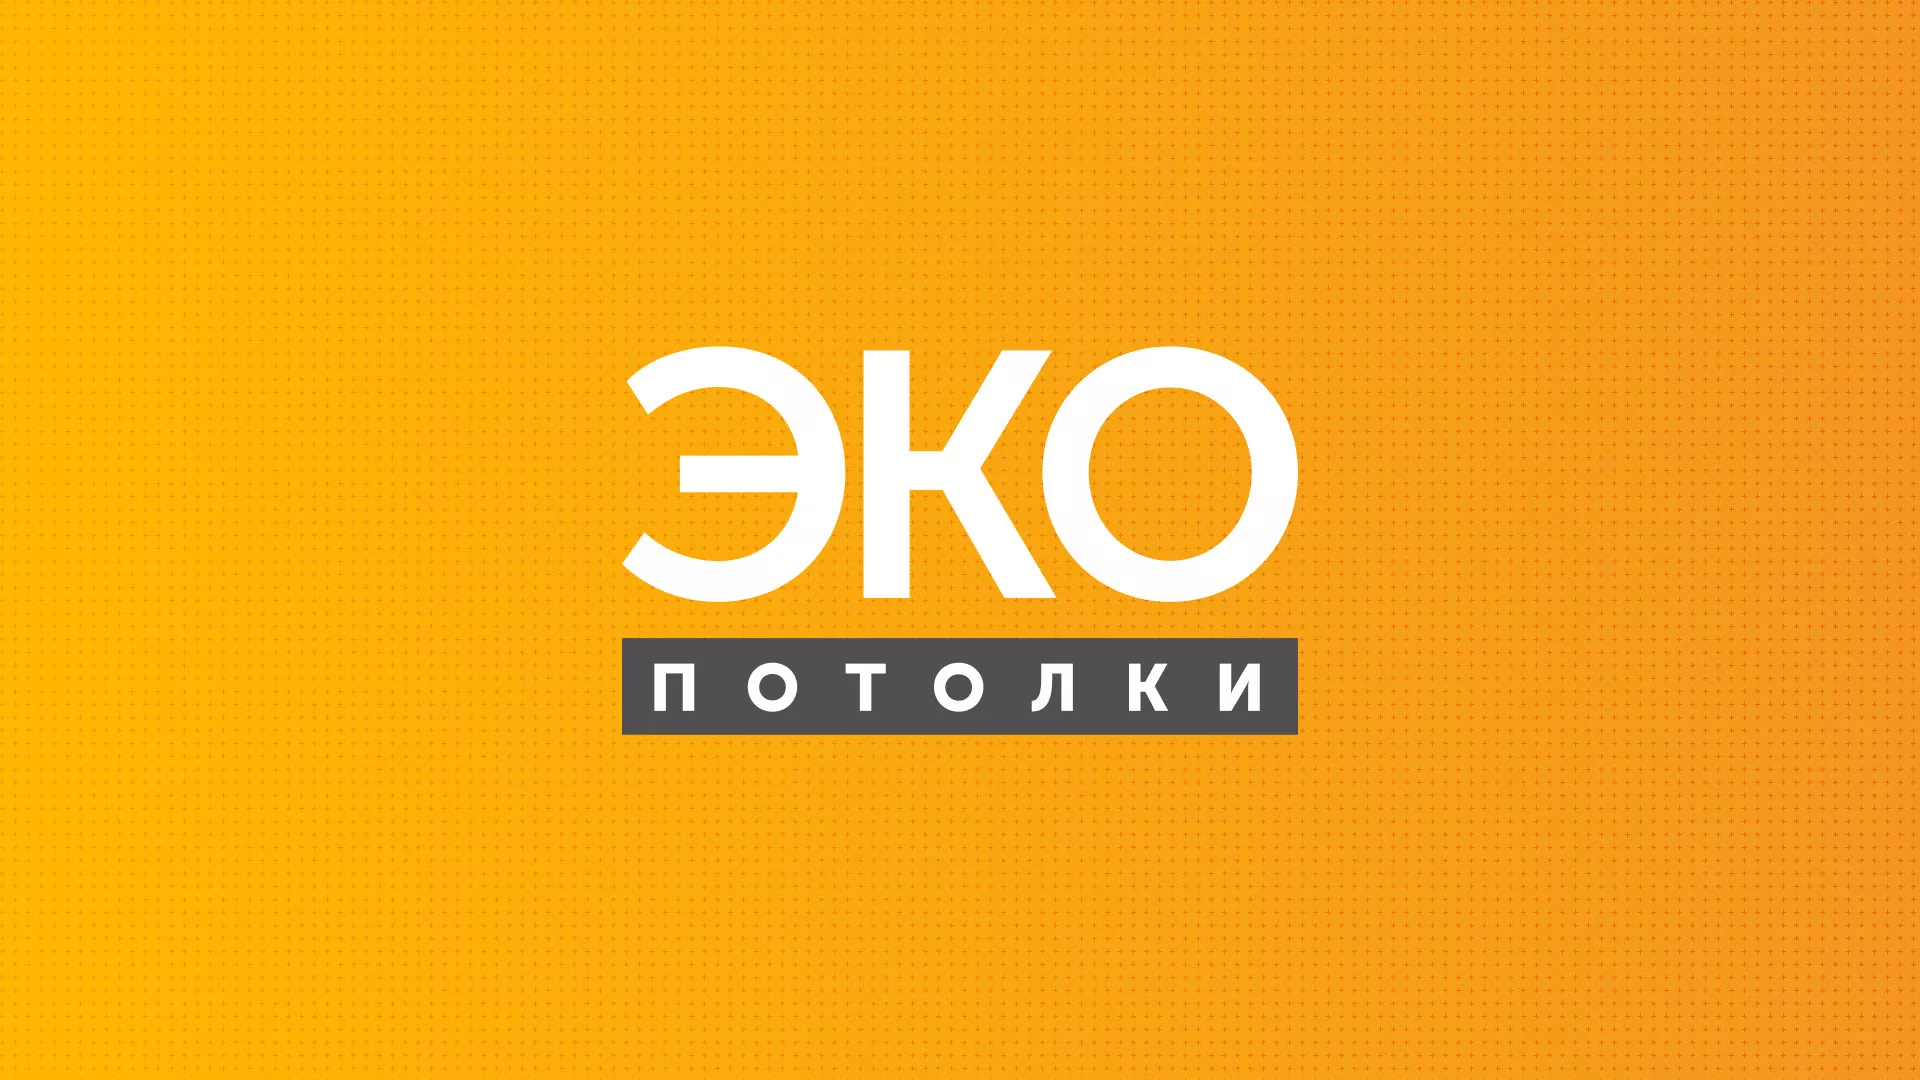 Разработка сайта по натяжным потолкам «Эко Потолки» в Славске